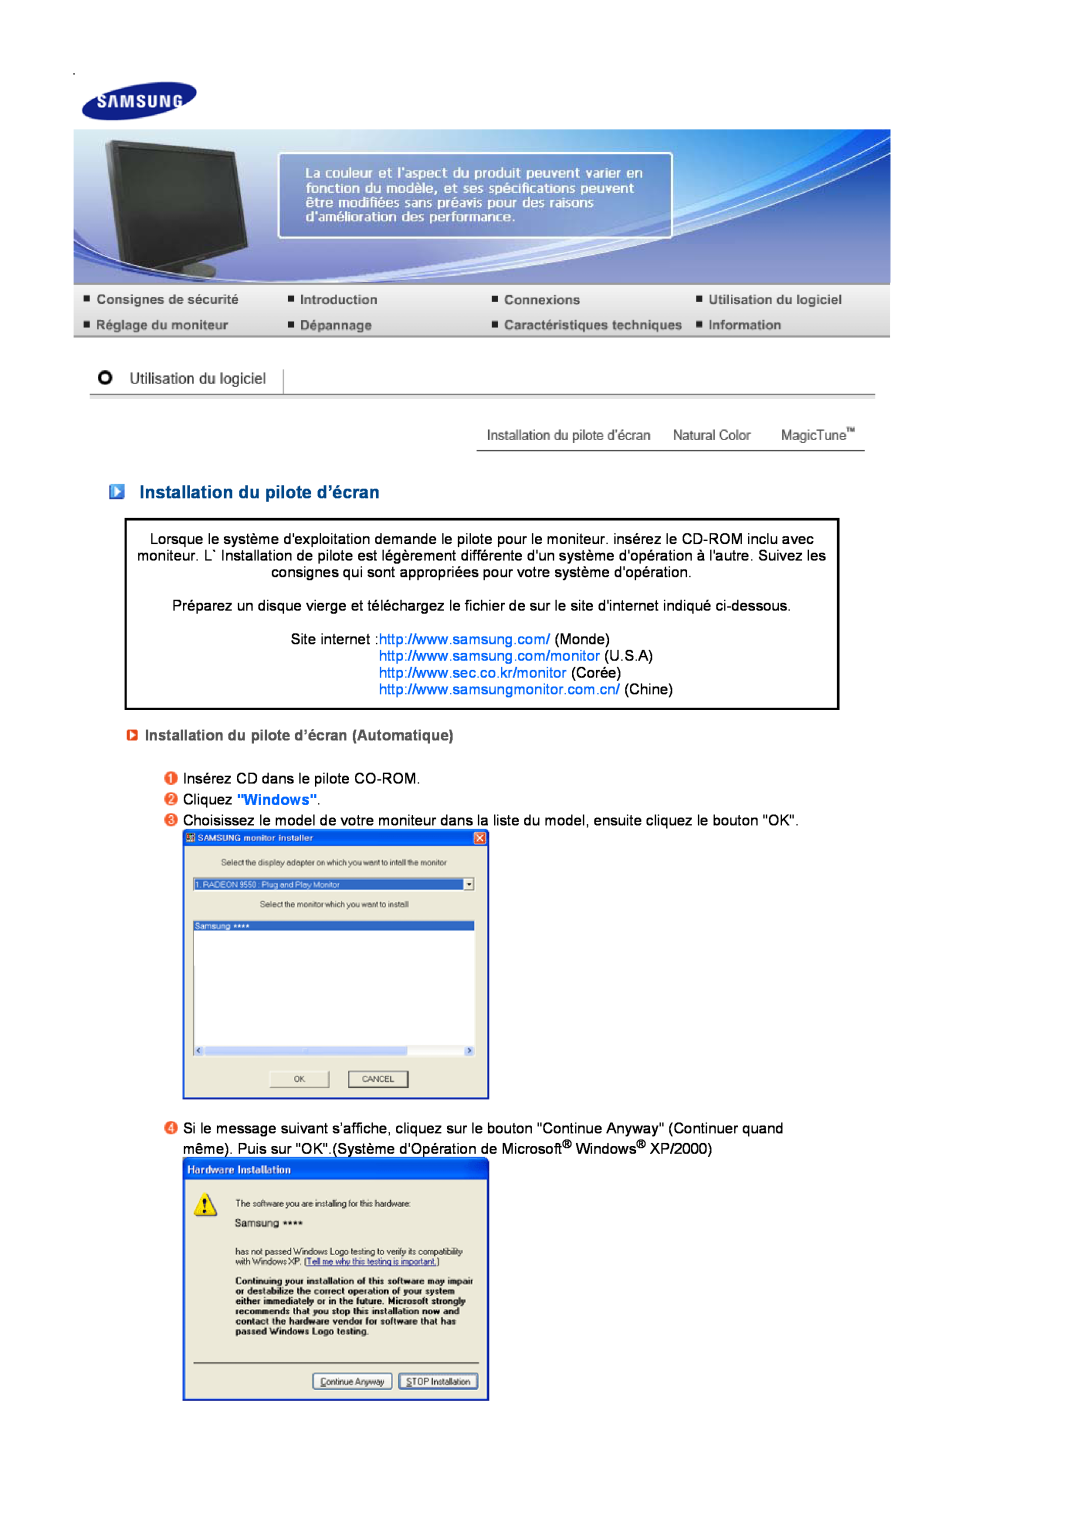 Samsung LS27HUBCB/EDC, LS27HUBCBS/EDC manual Installation du pilote d’écran Automatique 